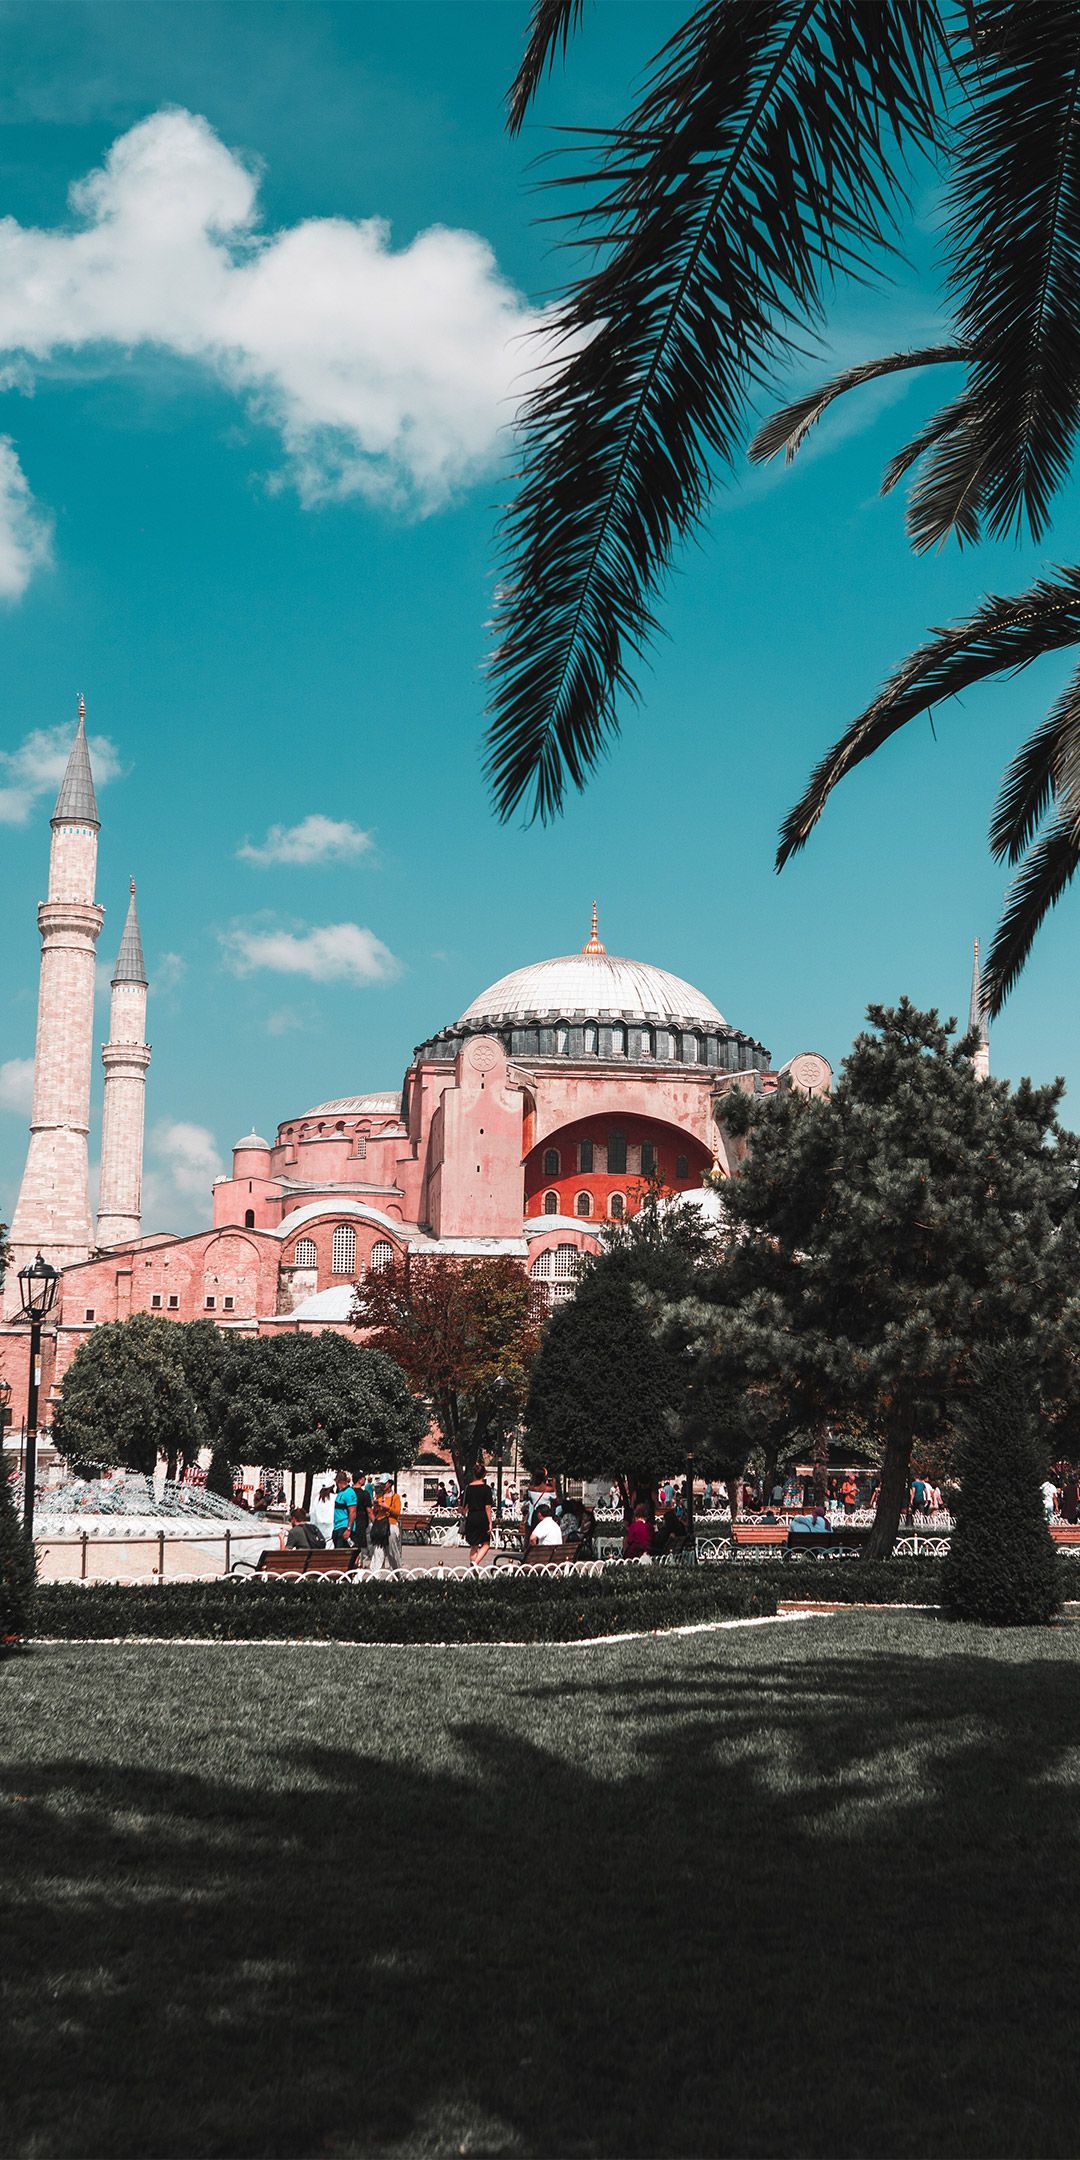 Hagia Sophia Museum Islamic Wallpaper di 2020. Kertas dinding, Turki